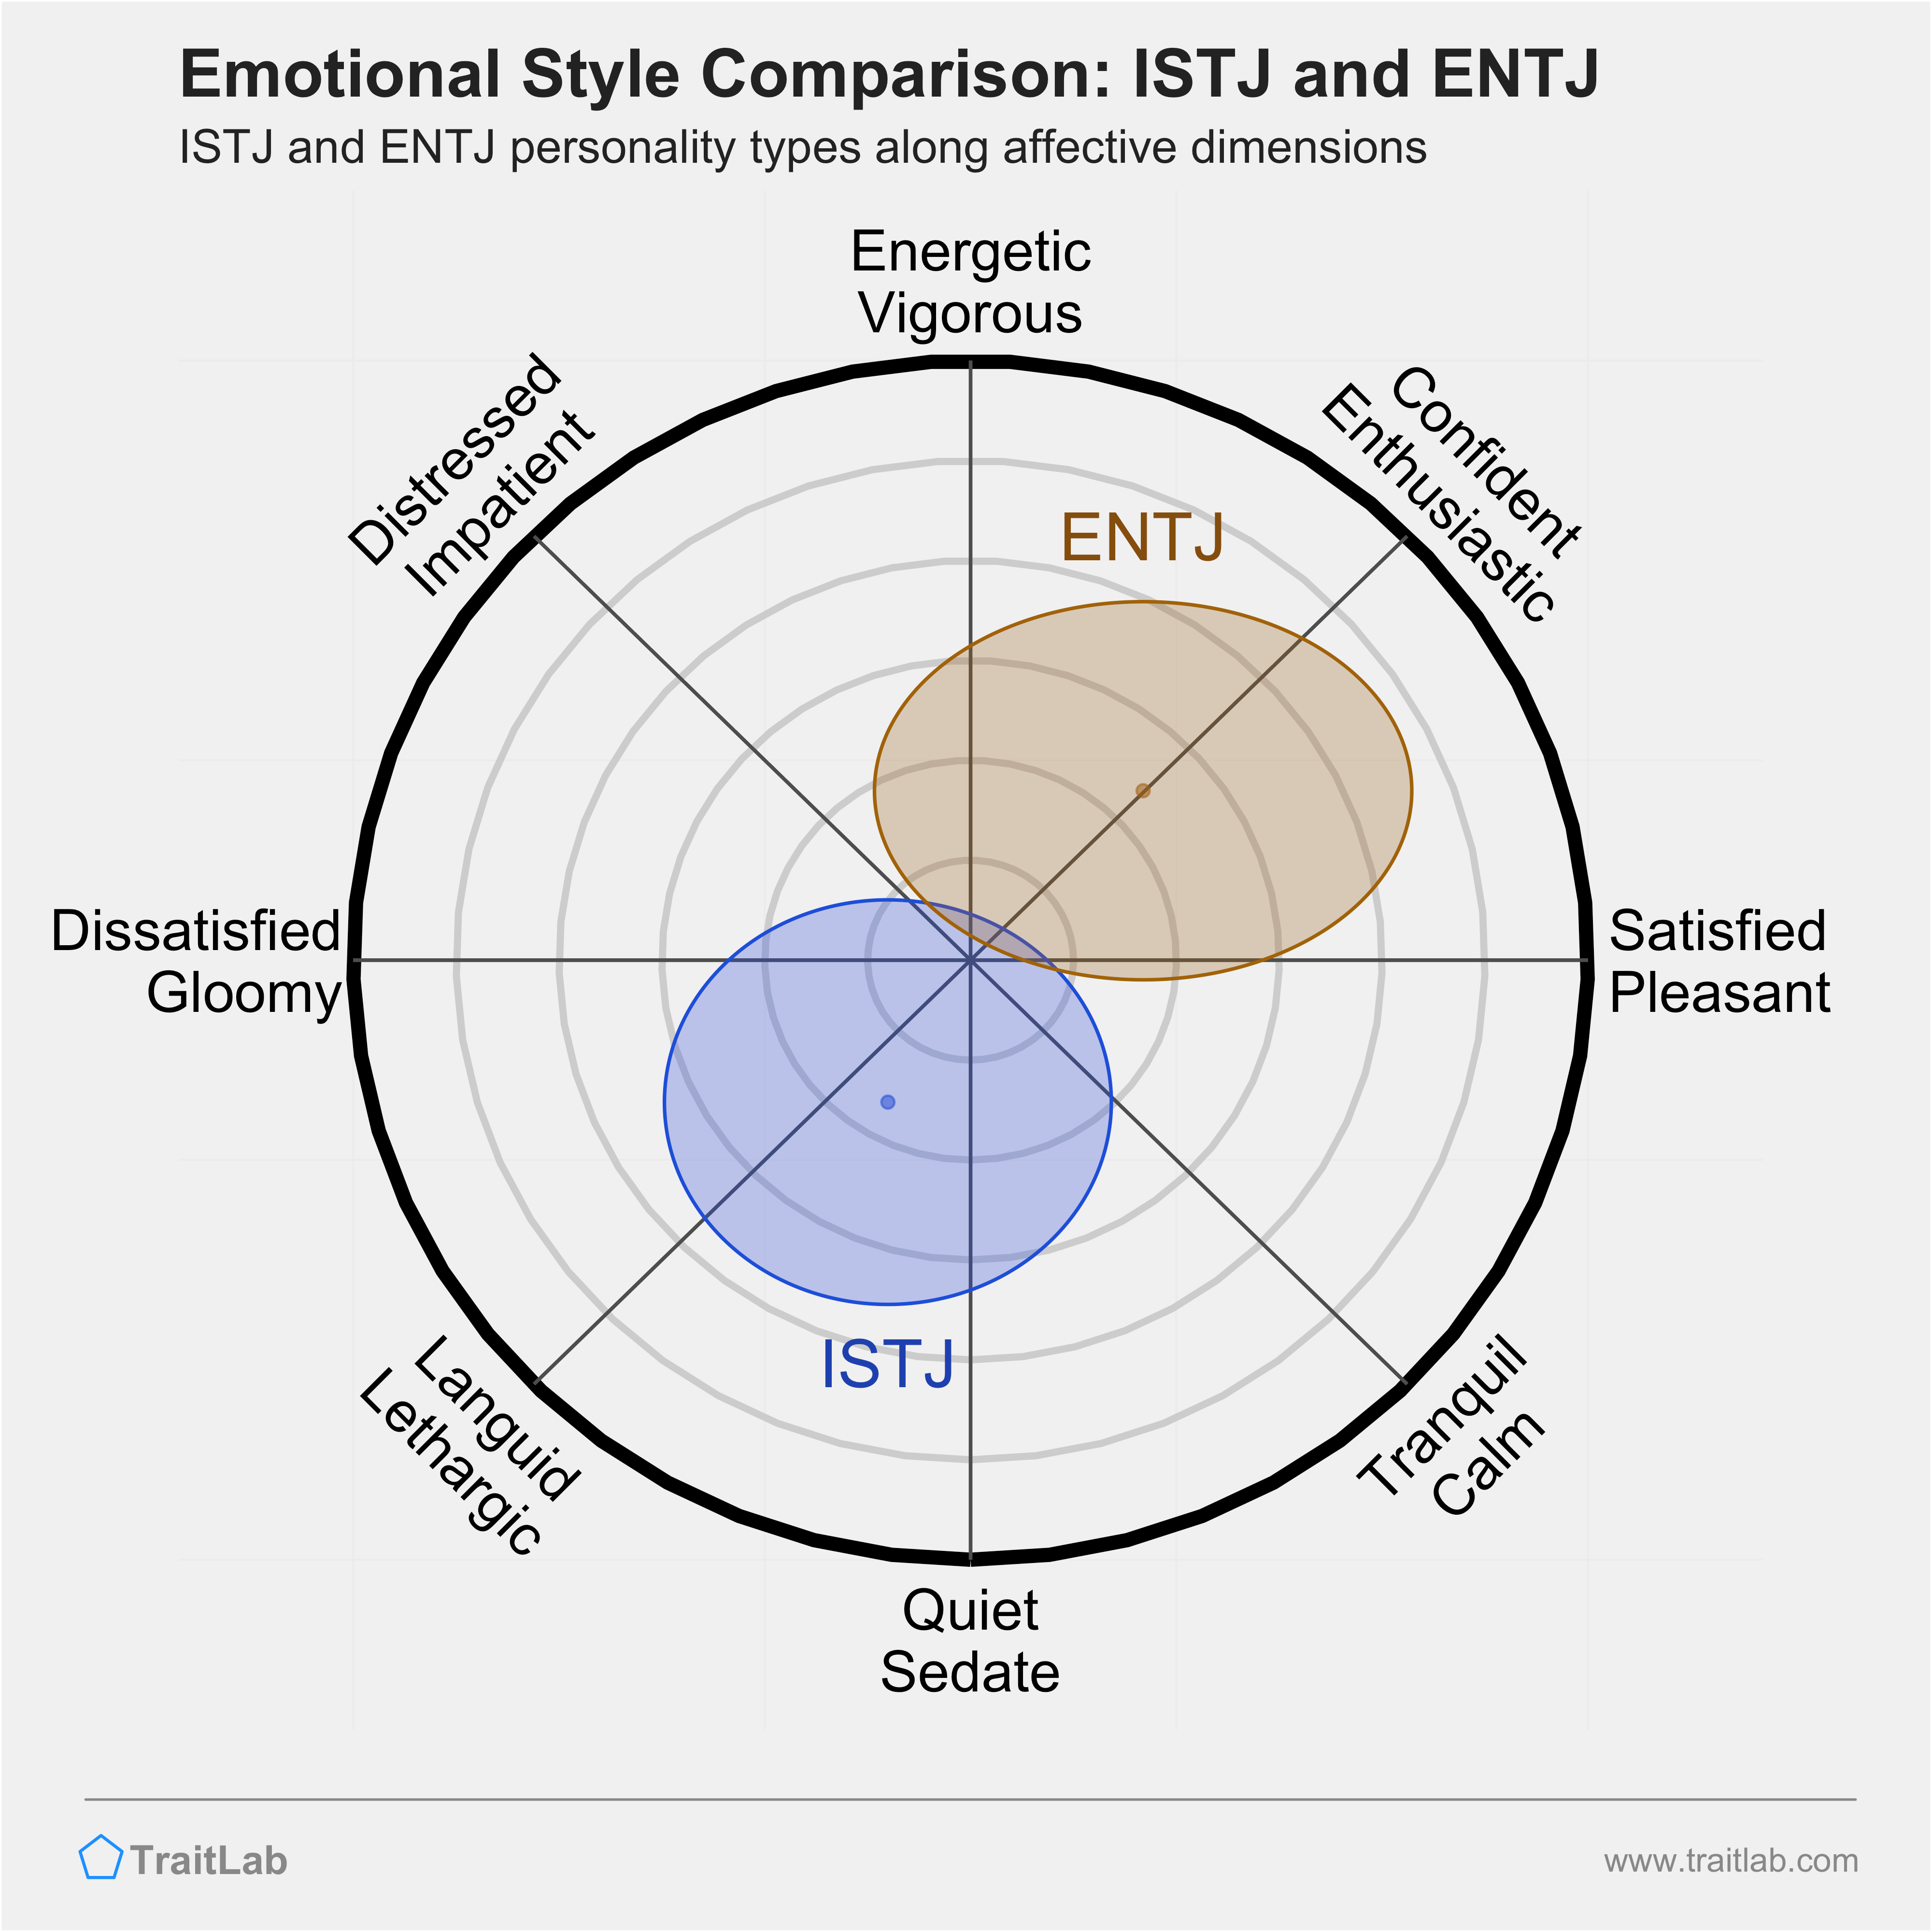 ISTJ and ENTJ comparison across emotional (affective) dimensions